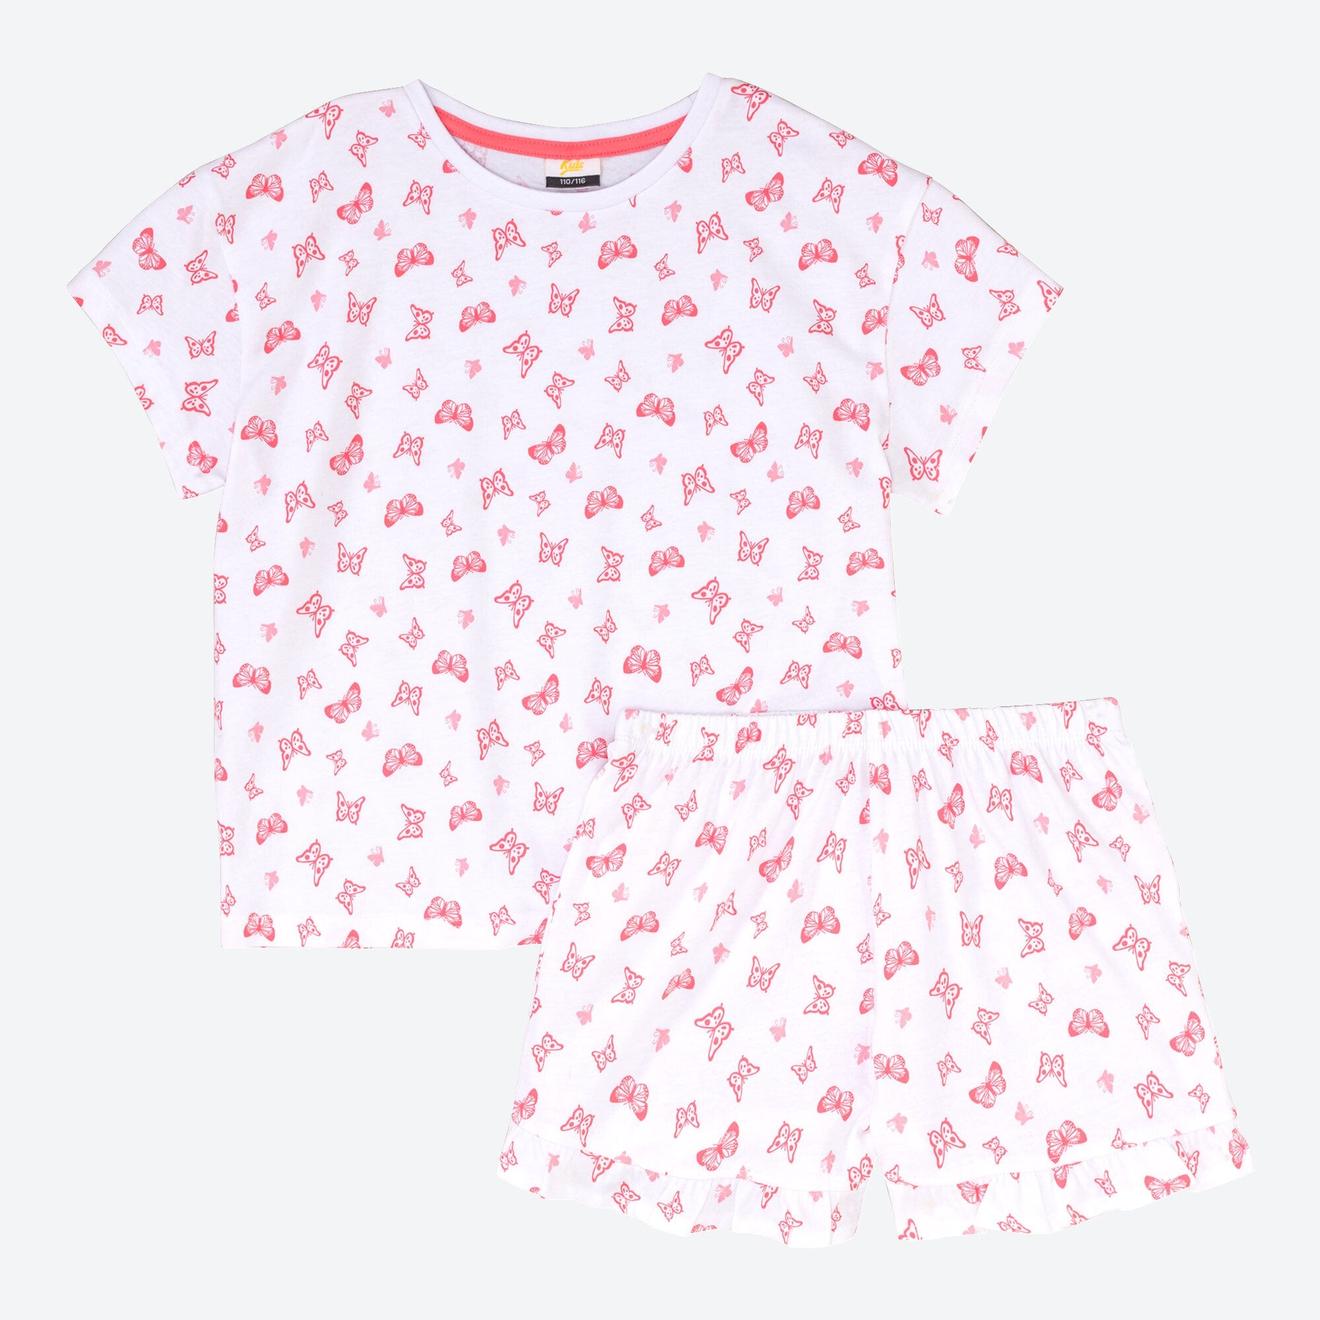 Kinder-Mädchen-Kurz-Schlafanzug aus reiner Baumwolle, 2-teilig für 4,99€ in NKD